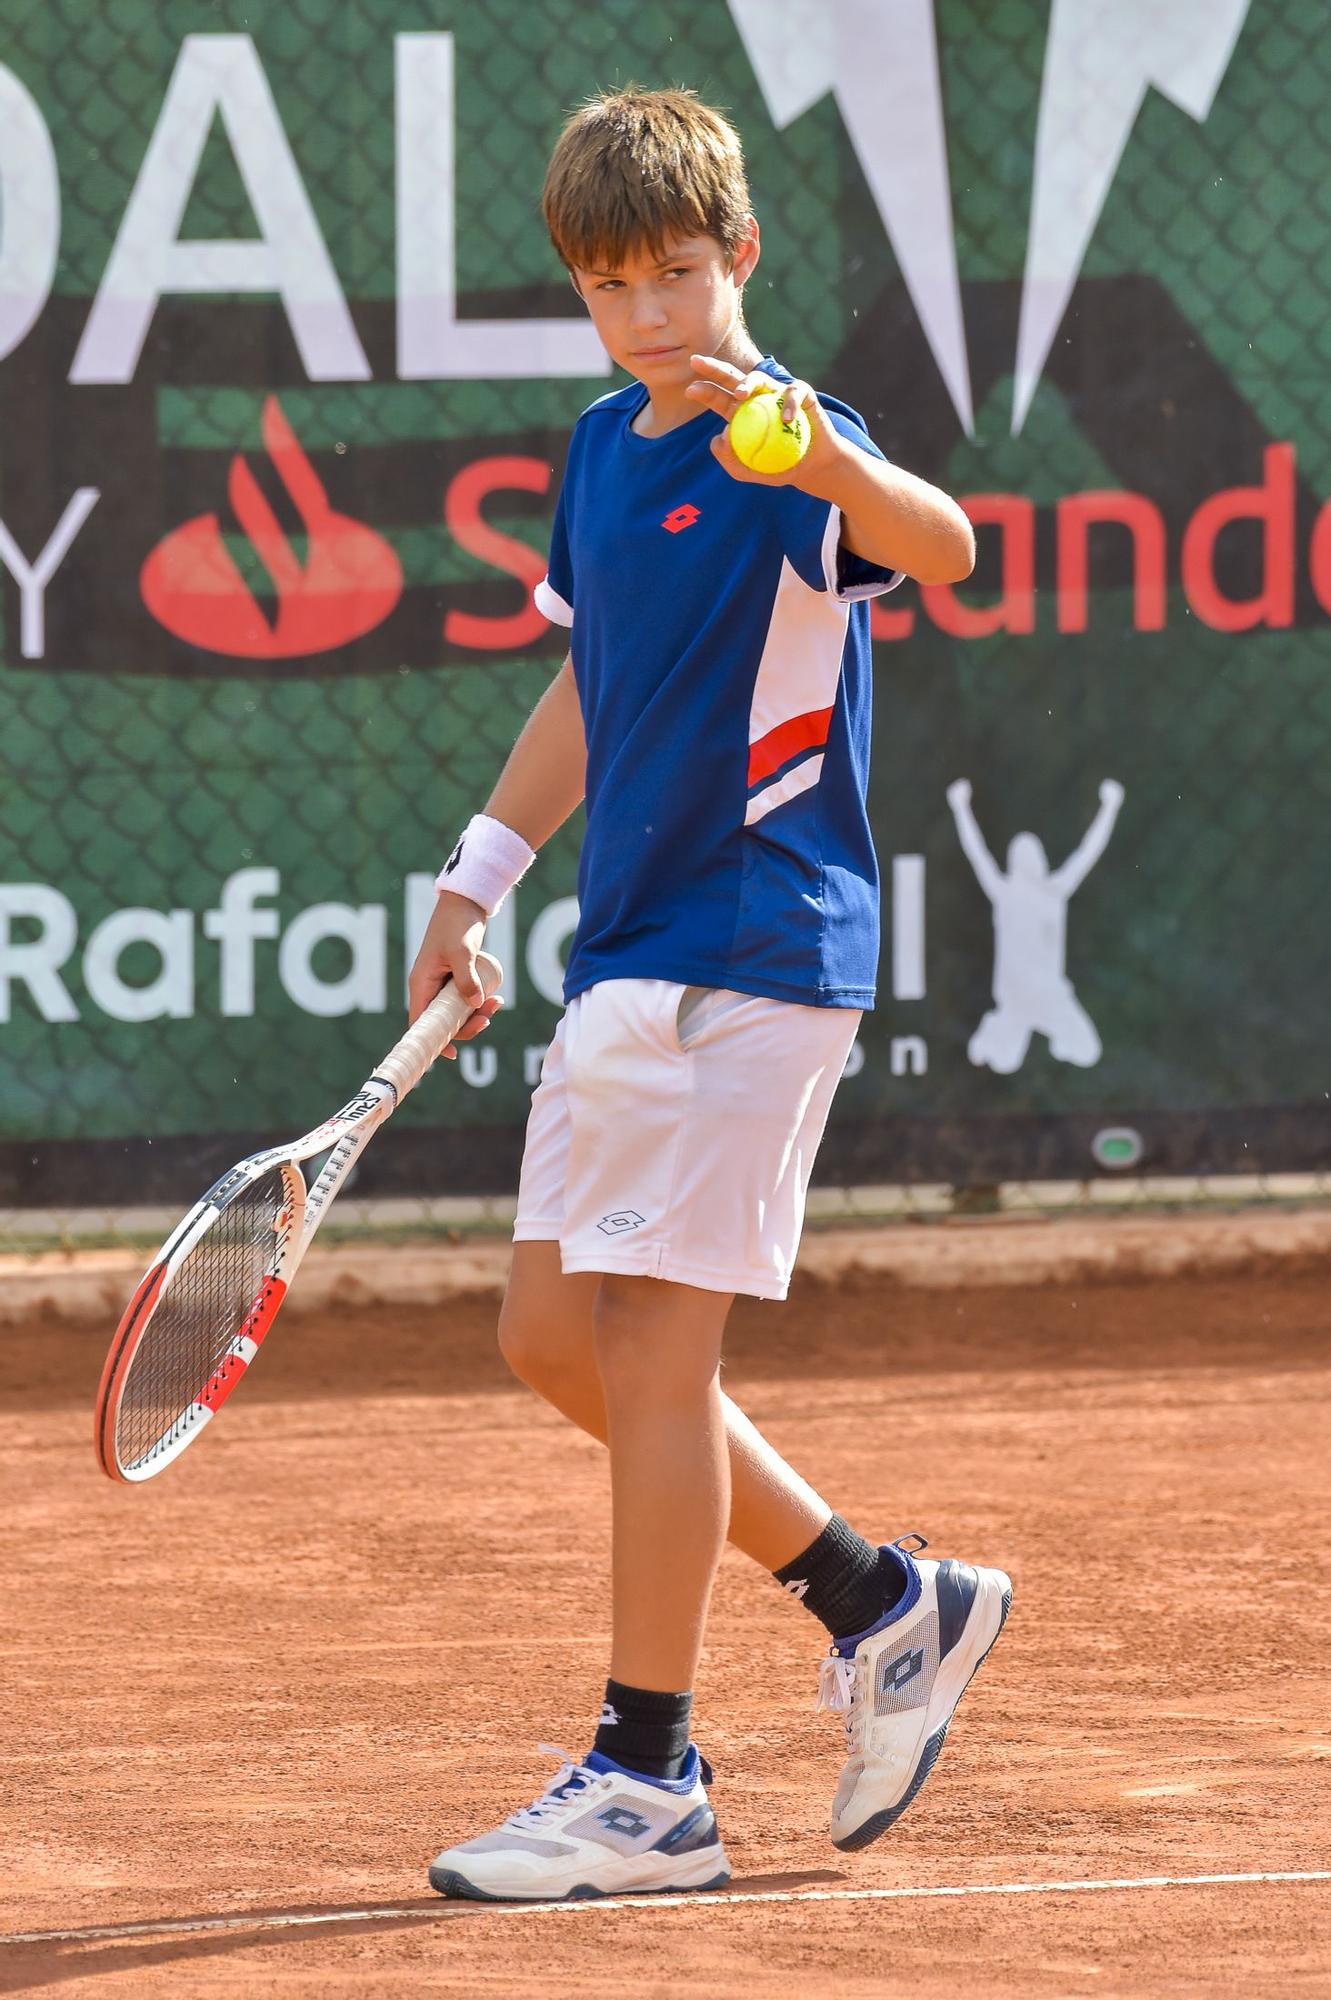 Jaime Alcaraz, hermano de Carlos, en el Rafal Nadal Tour By Santander 2023 que se juega en El Cortijo (Telde)